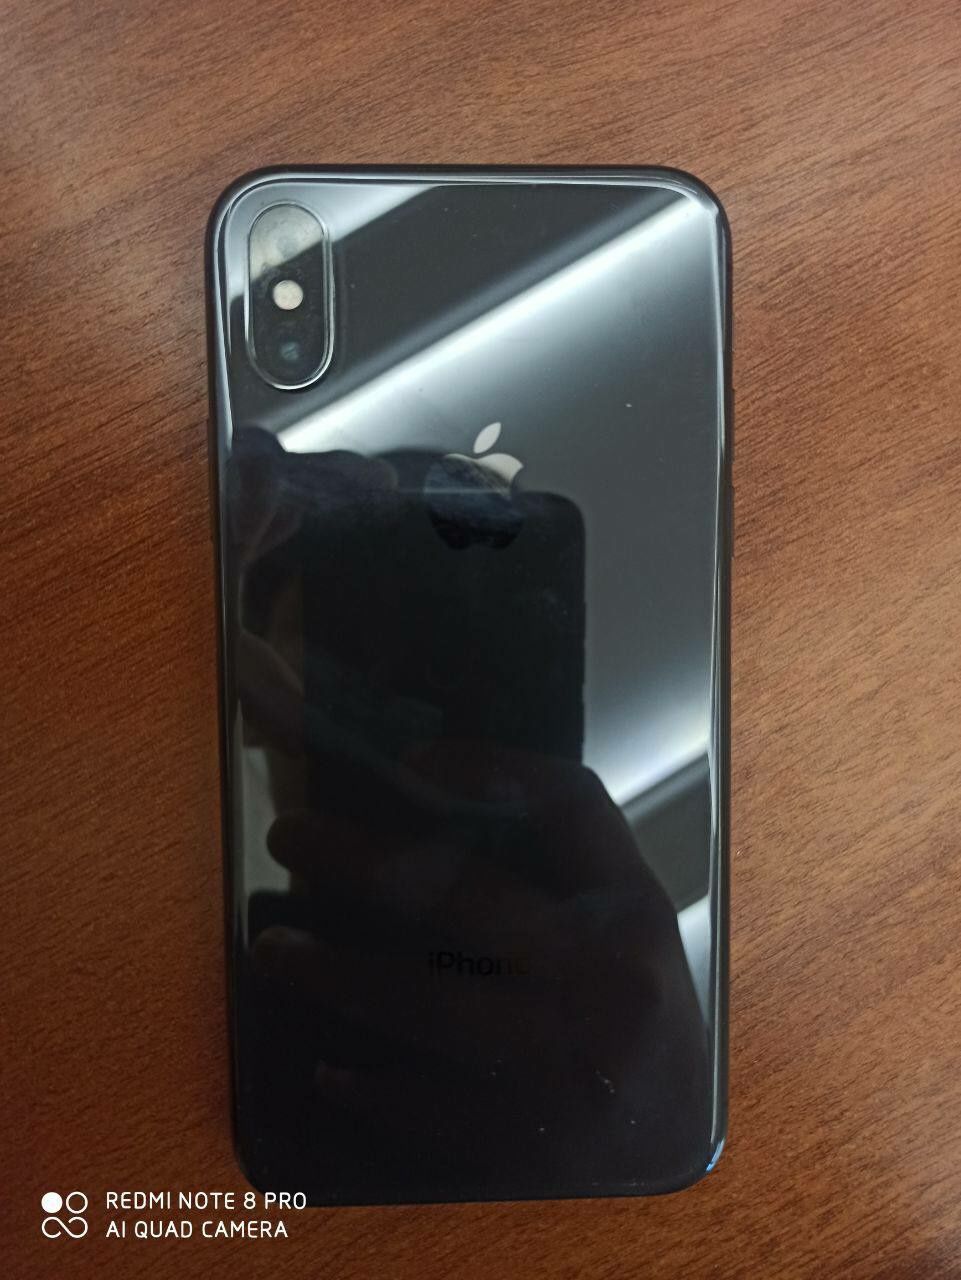 iPhone X 64 gb black color